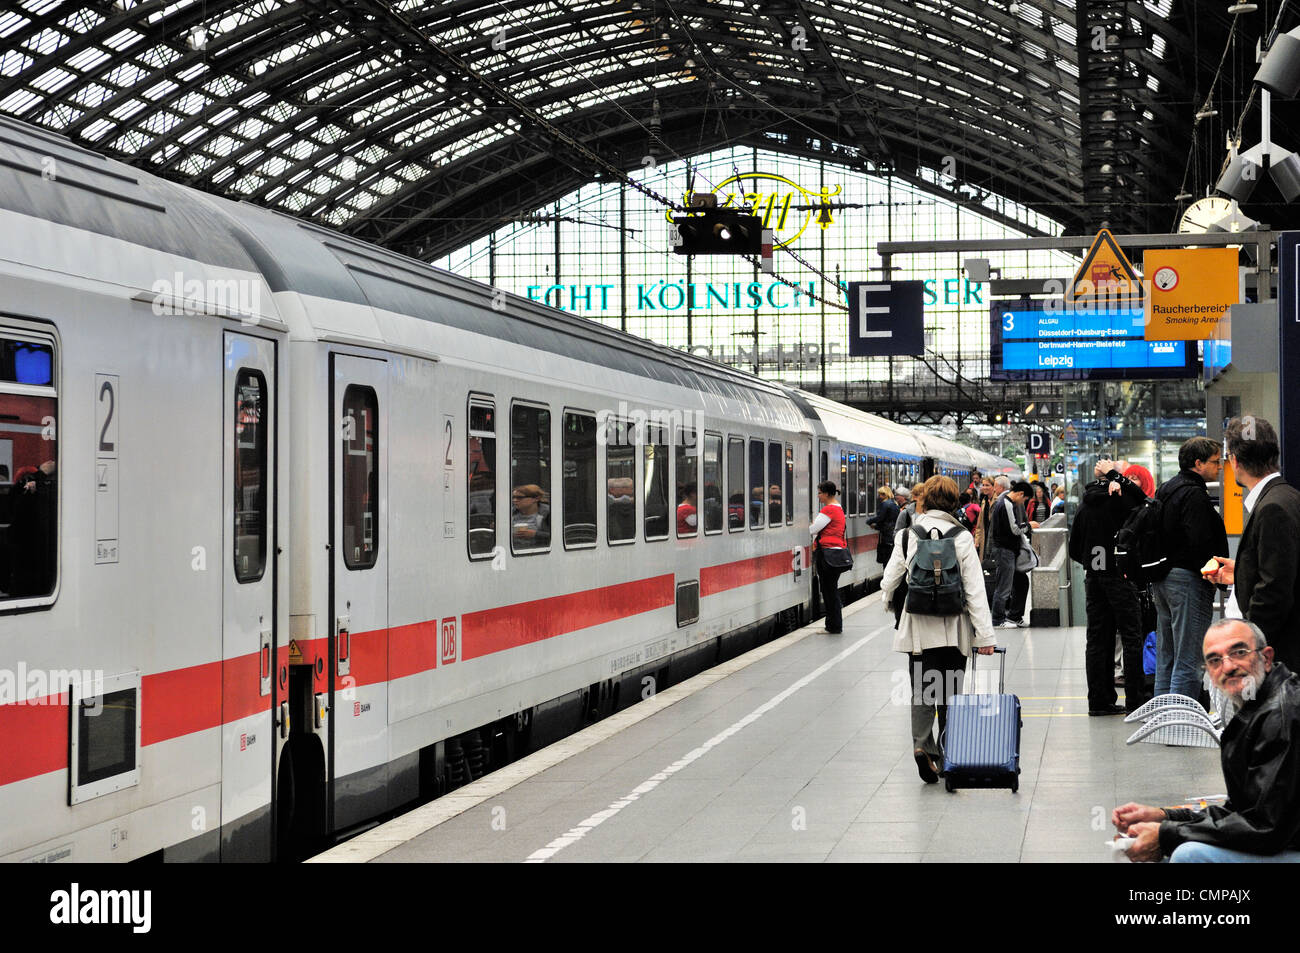 La Deutsche Bahn allemande DB high speed train interurbain de voyageurs debout à plate-forme en gare de Cologne, Allemagne Banque D'Images